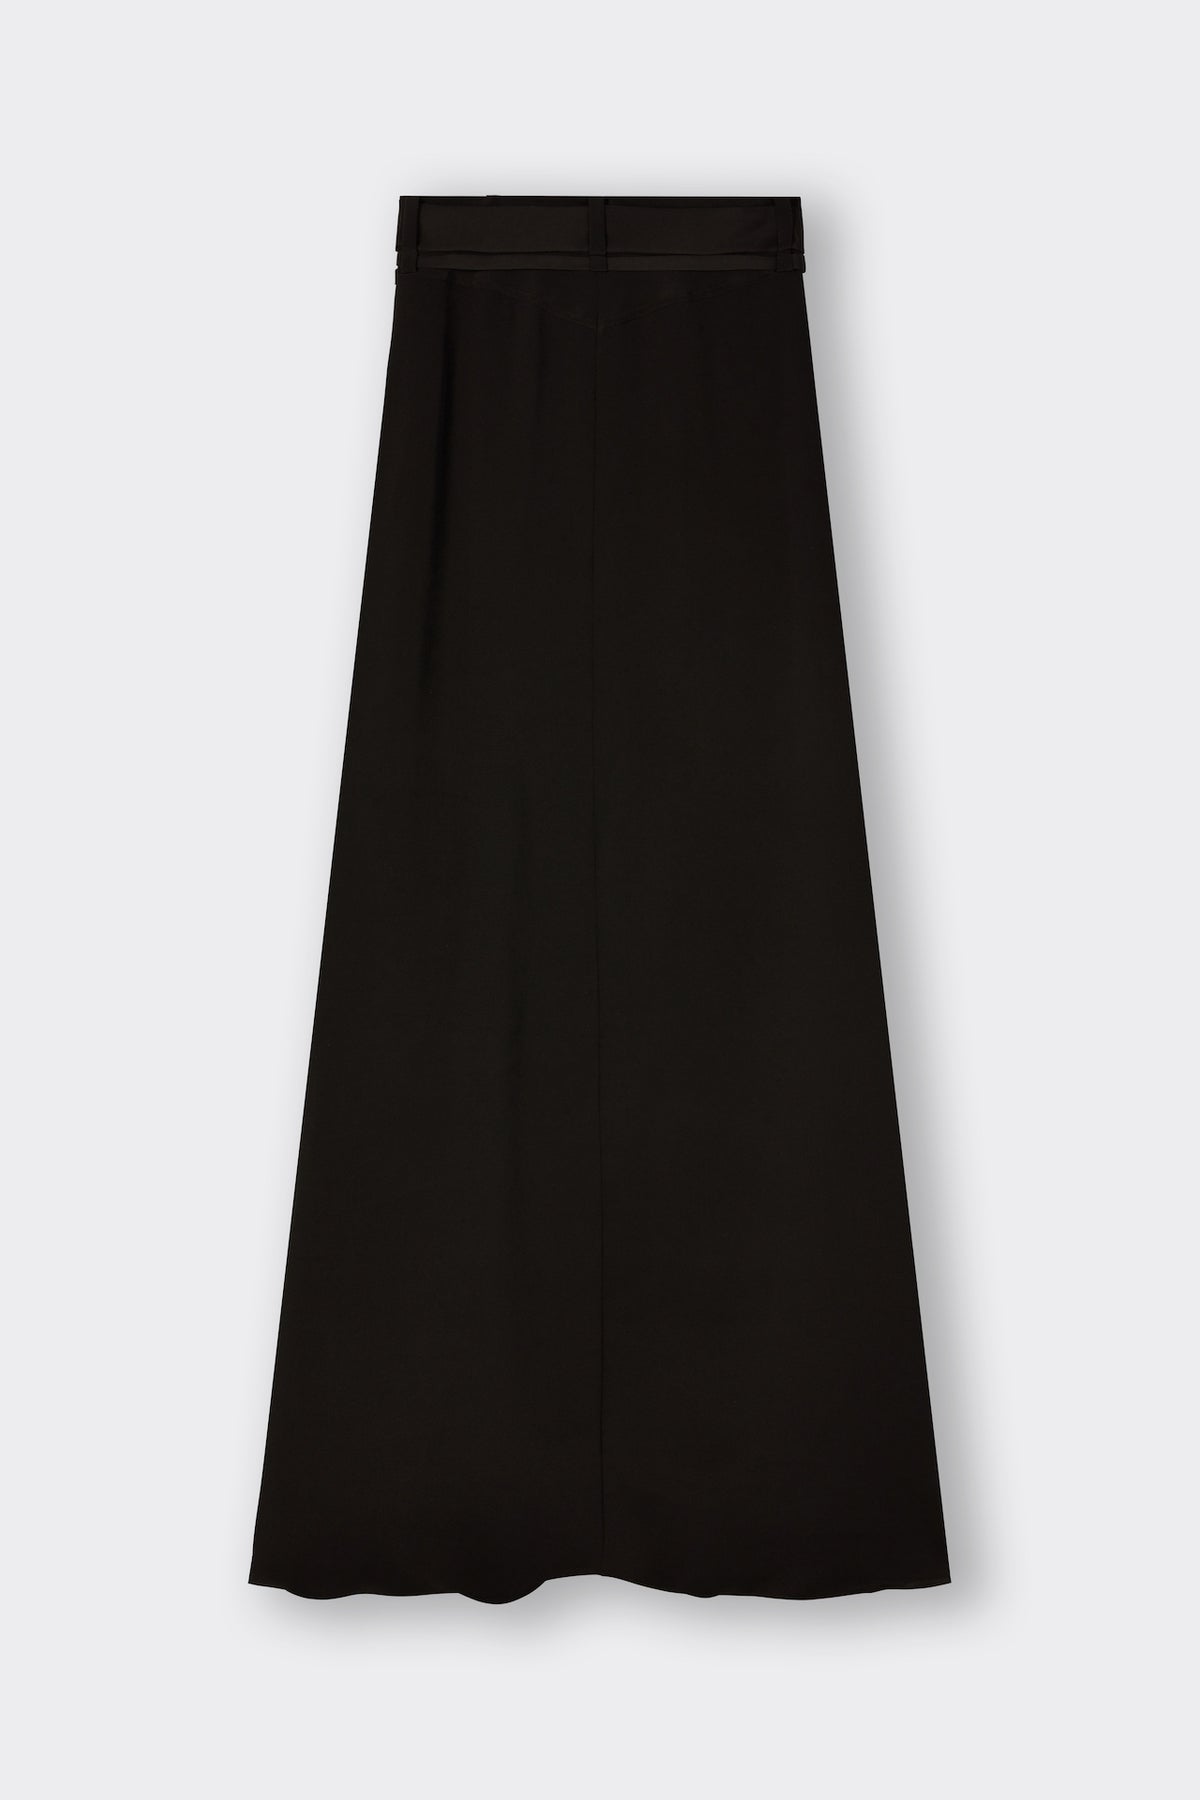 Warwick Skirt in Black | Noon By Noor